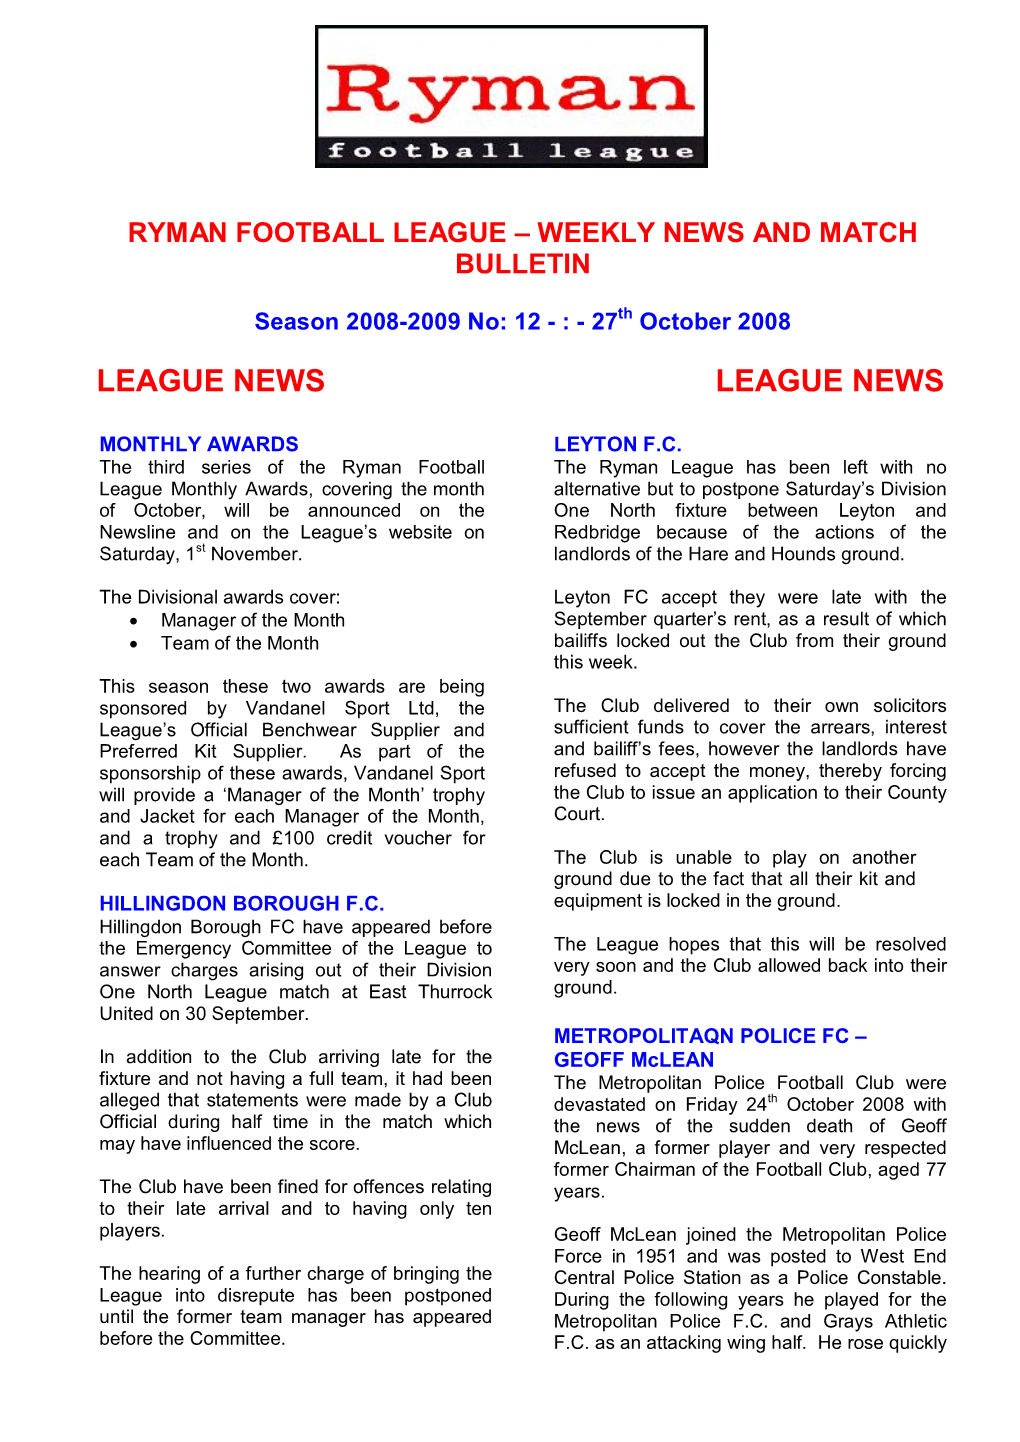 League News League News